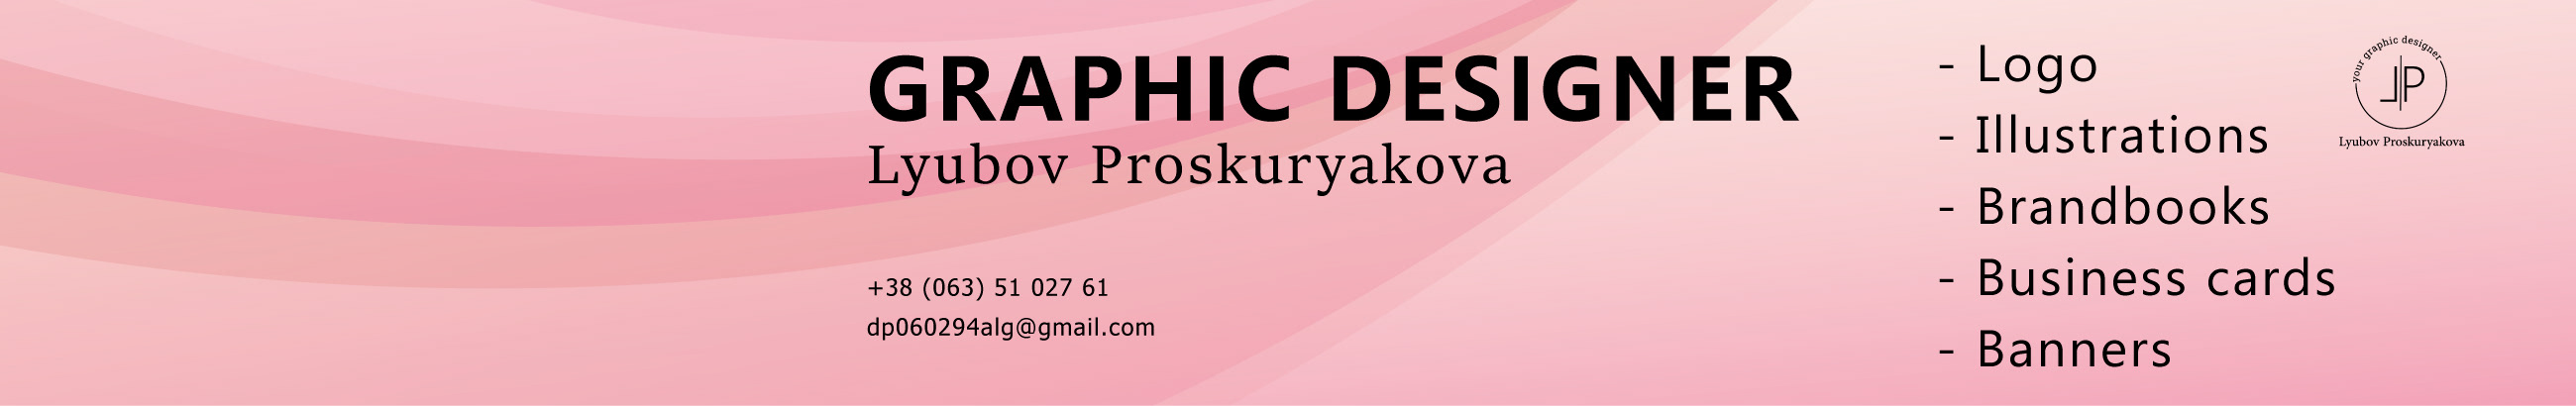 Баннер профиля Lyubov Proskuryakova